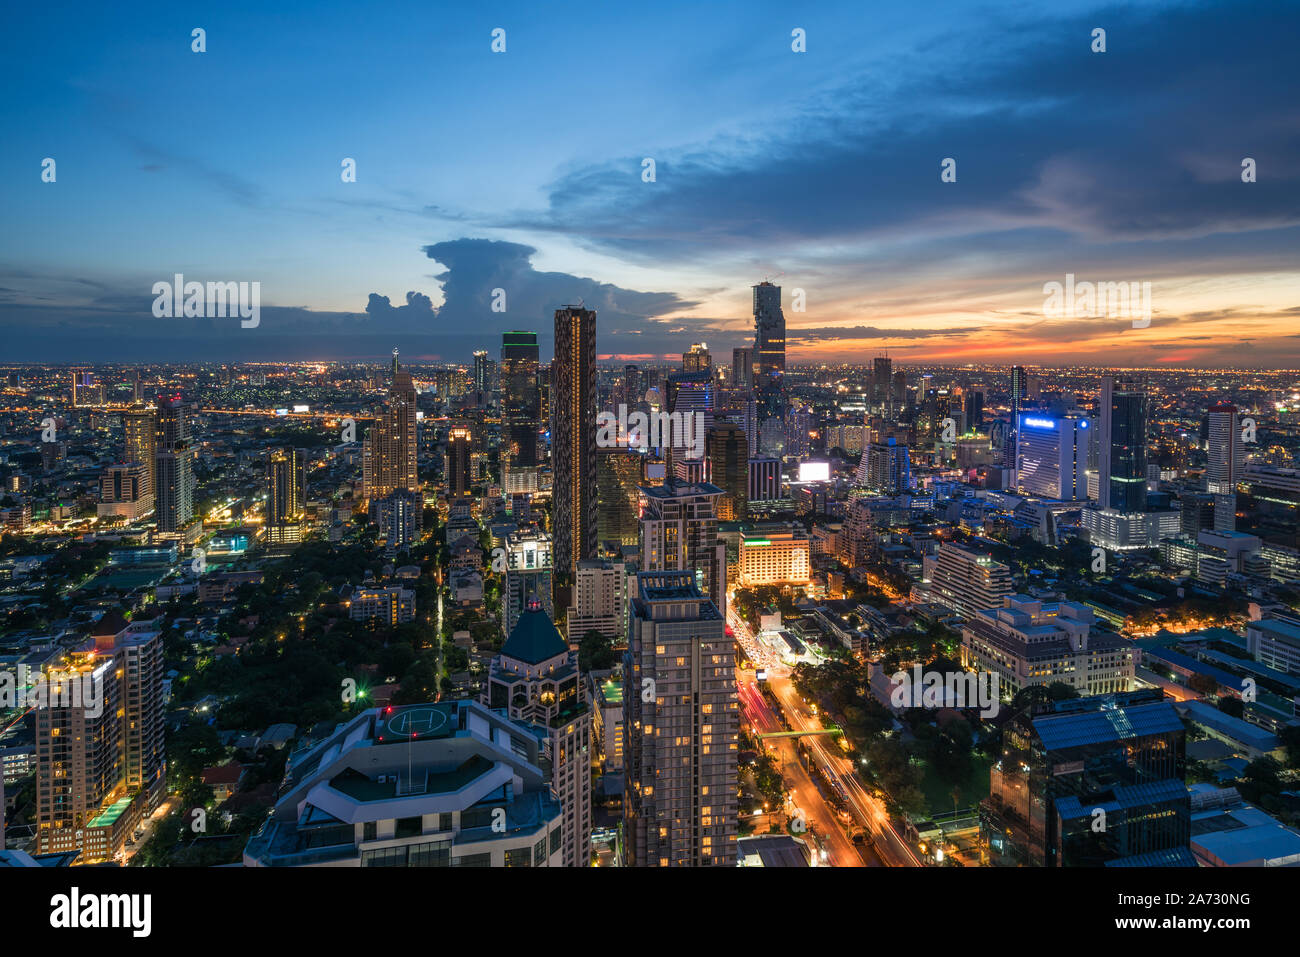 Immeuble moderne dans le quartier des affaires de Bangkok à Bangkok city skyline, au crépuscule, avec la Thaïlande. Banque D'Images